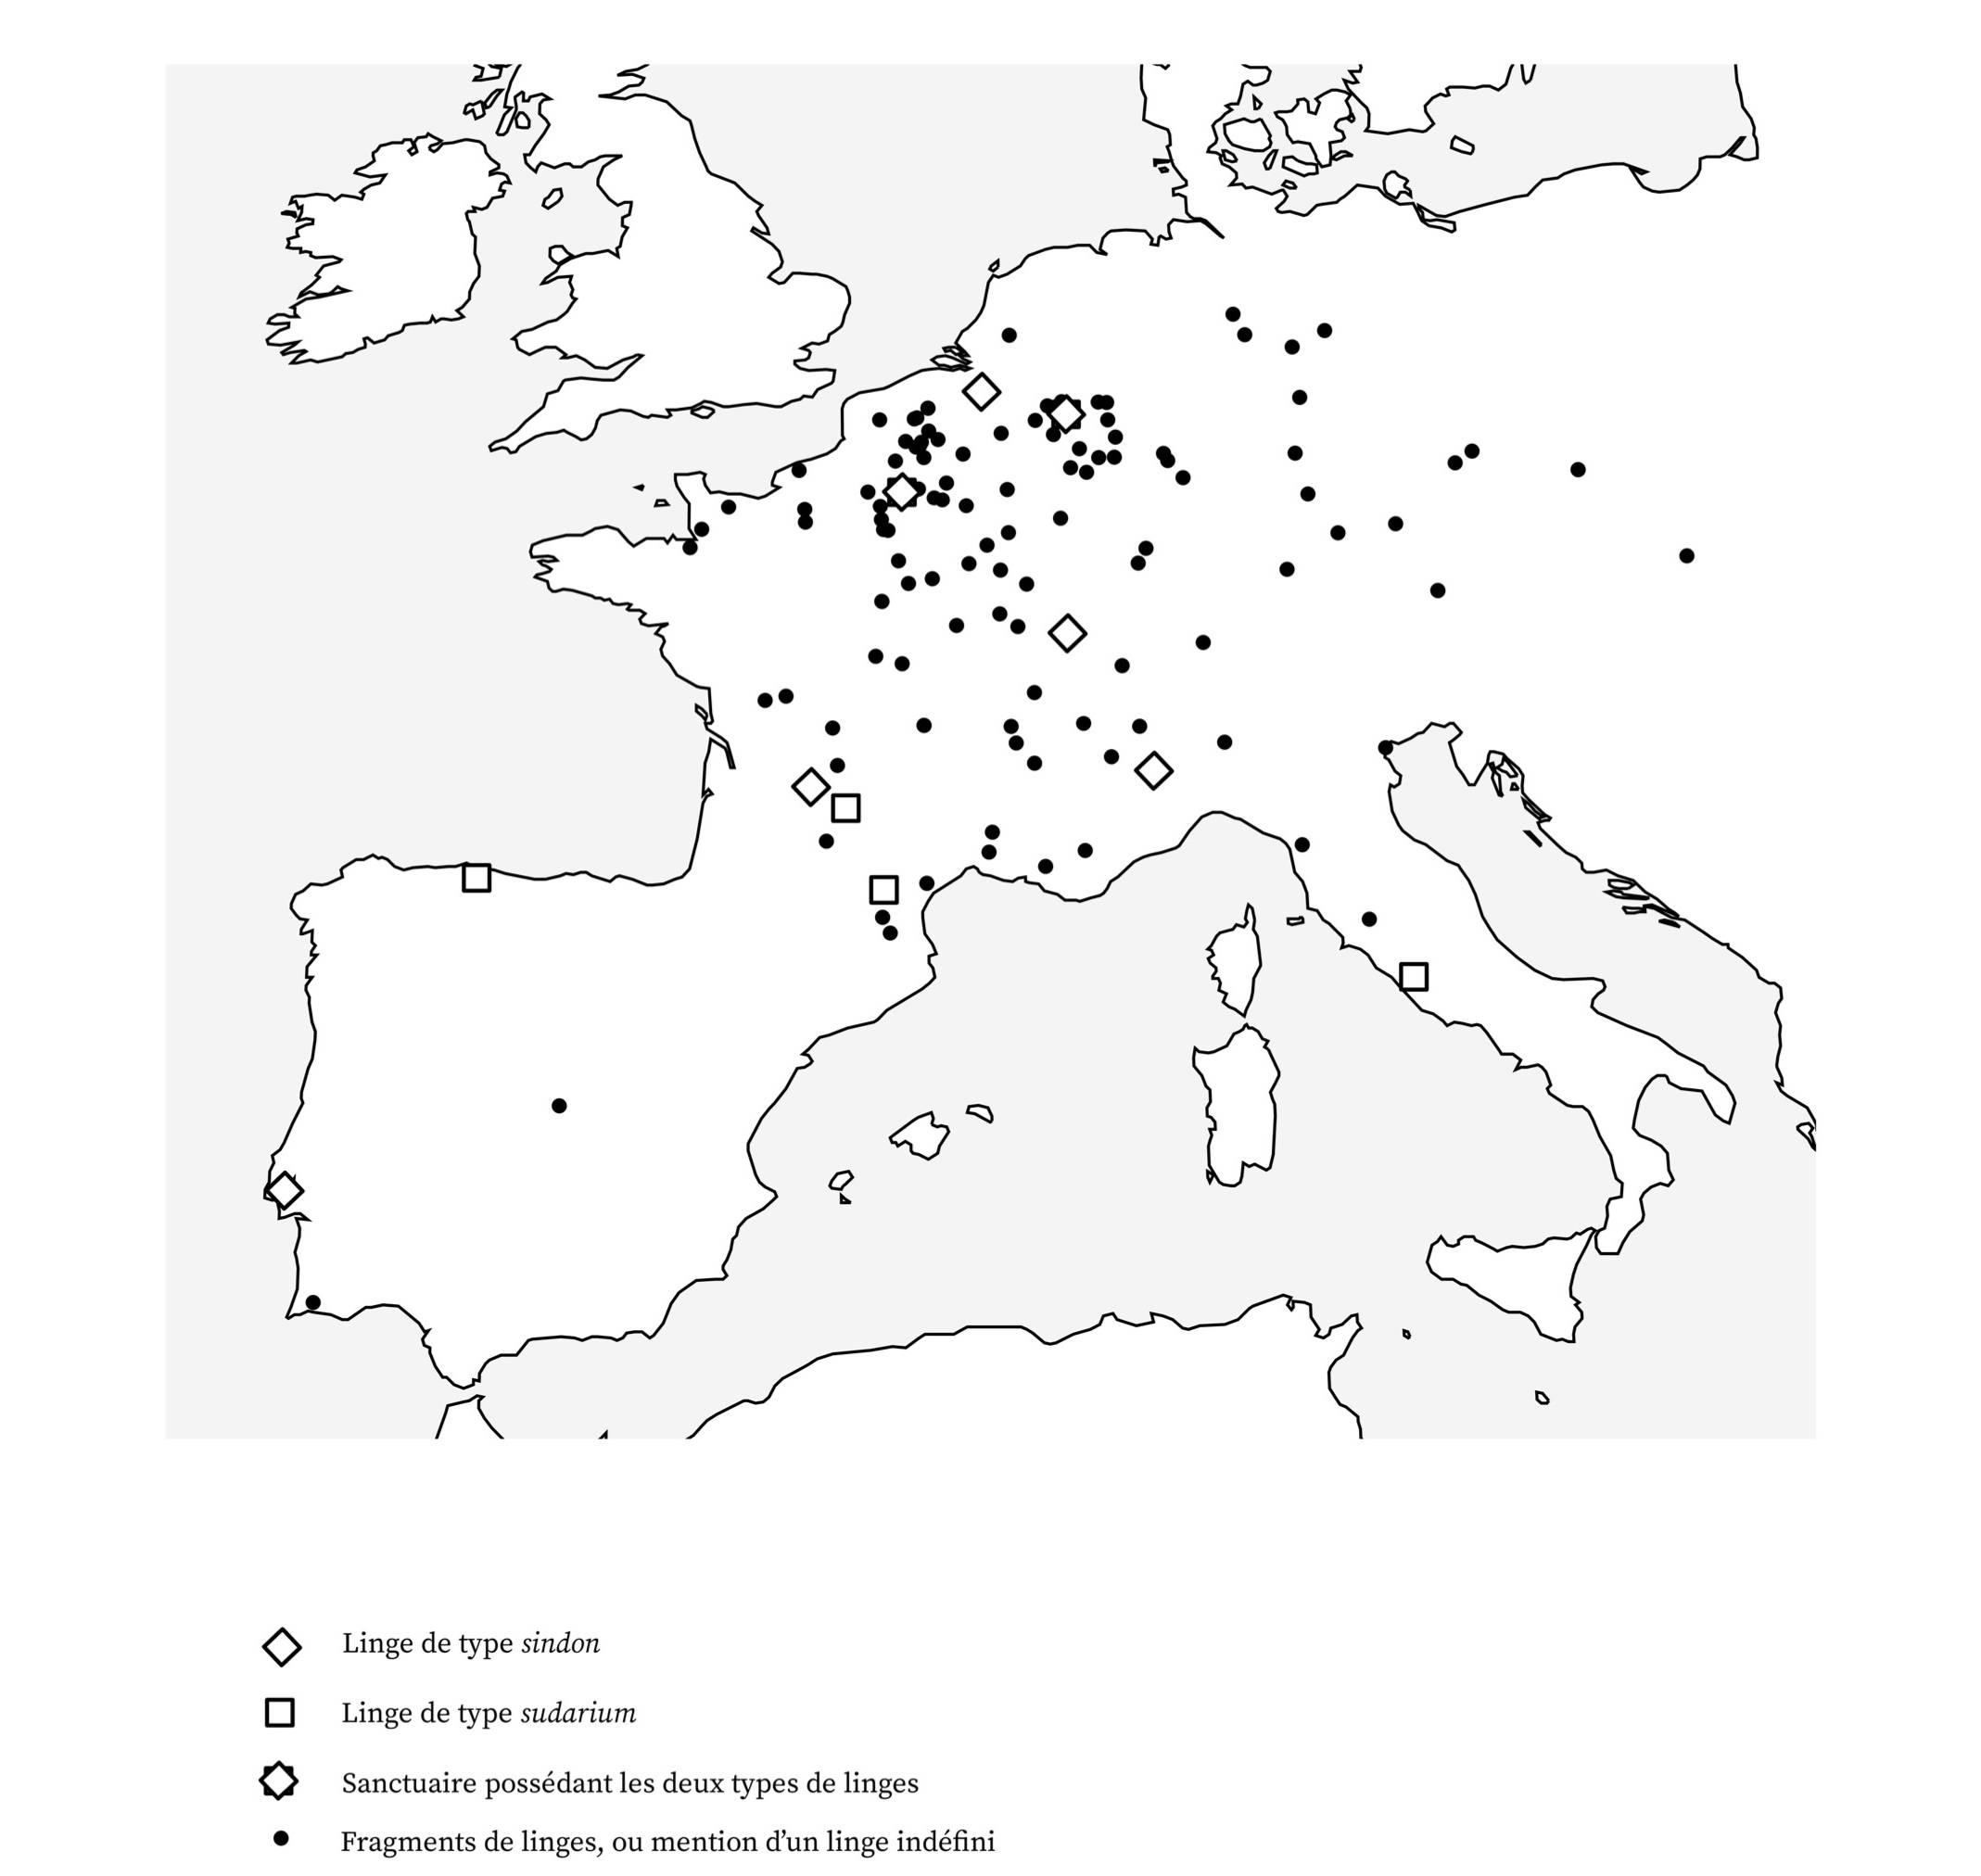 Carte des sanctuaires d’Occident ayant vénéré le suaire du Christ, du Moyen Âge à nos jours – source : CC-BY/Nicolas Sarzeaud